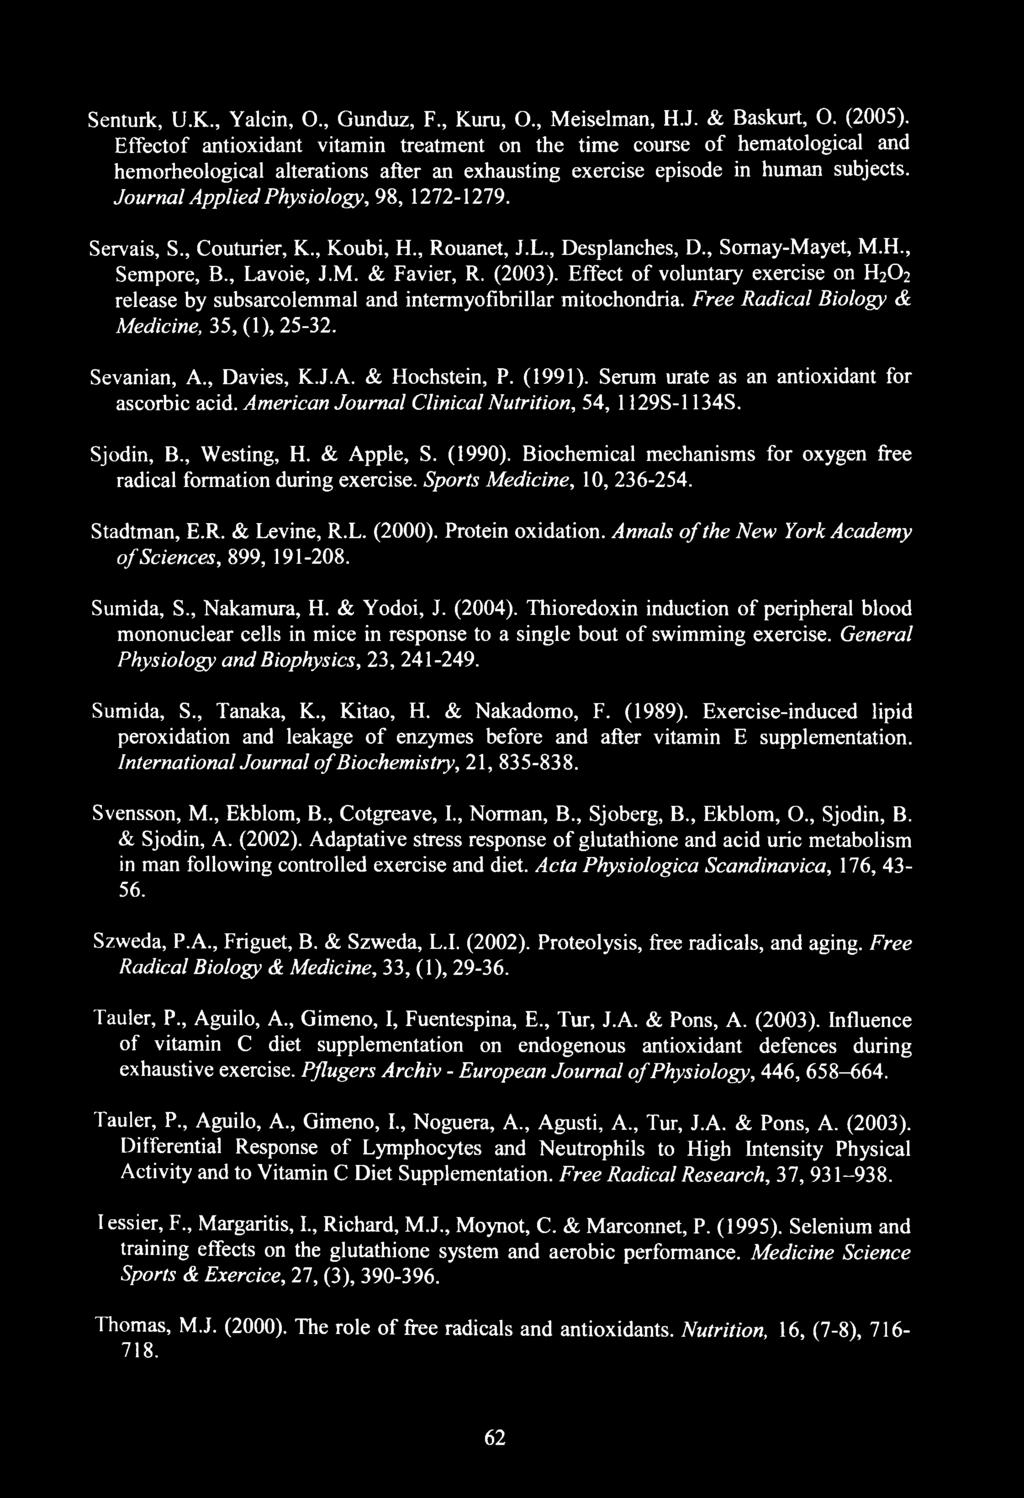 Journal Applied Physiology, 98, 1272-1279. Servais, S., Couturier, K., Koubi, H., Rouanet, J.L., Desplanches, D., Somay-Mayet, M.H., Sempore, B., Lavoie, J.M. & Favier, R. (2003).